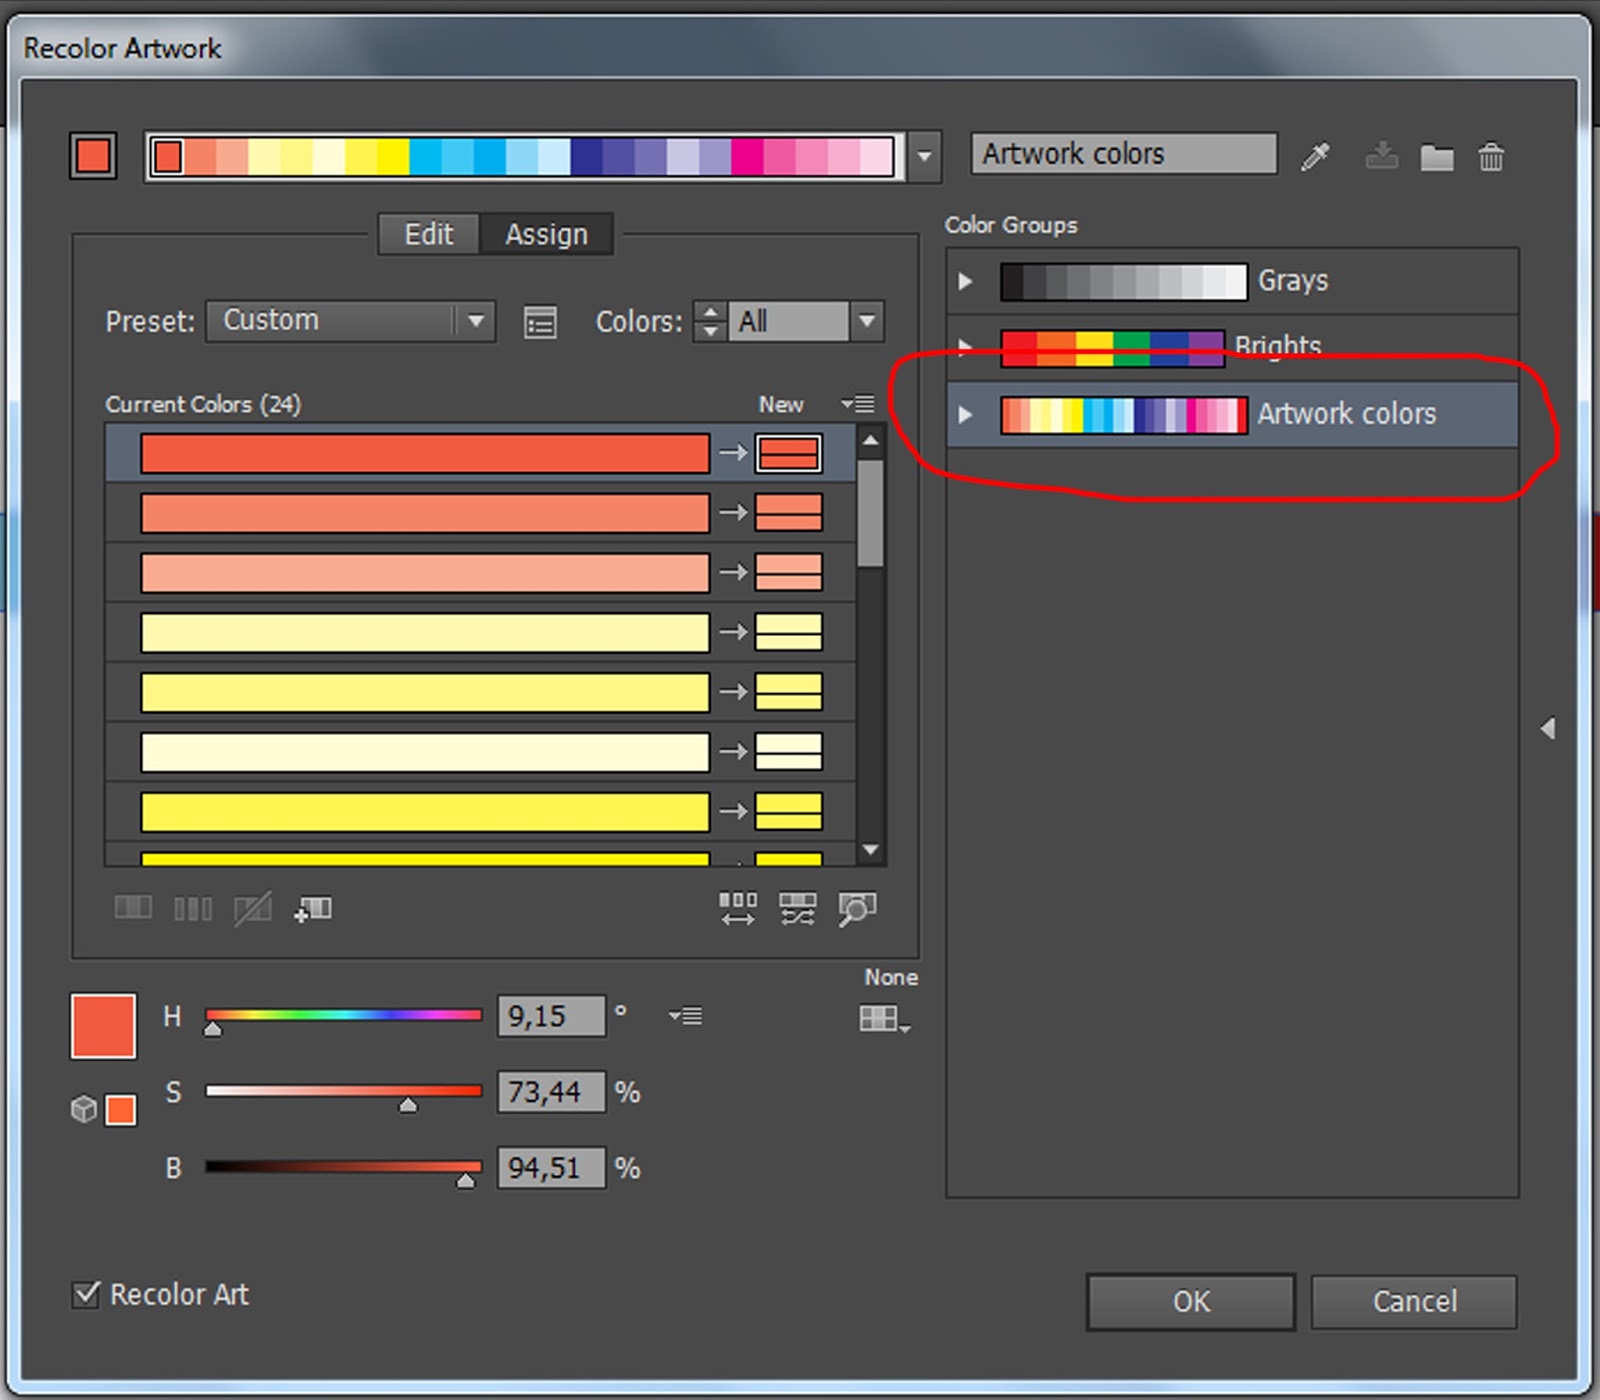 Coloring edit. GMG COLORPROOF Интерфейс. Edit Edit Colors recolor artwork в корел. Edit - Edit Colors - recolor artwork перевод.